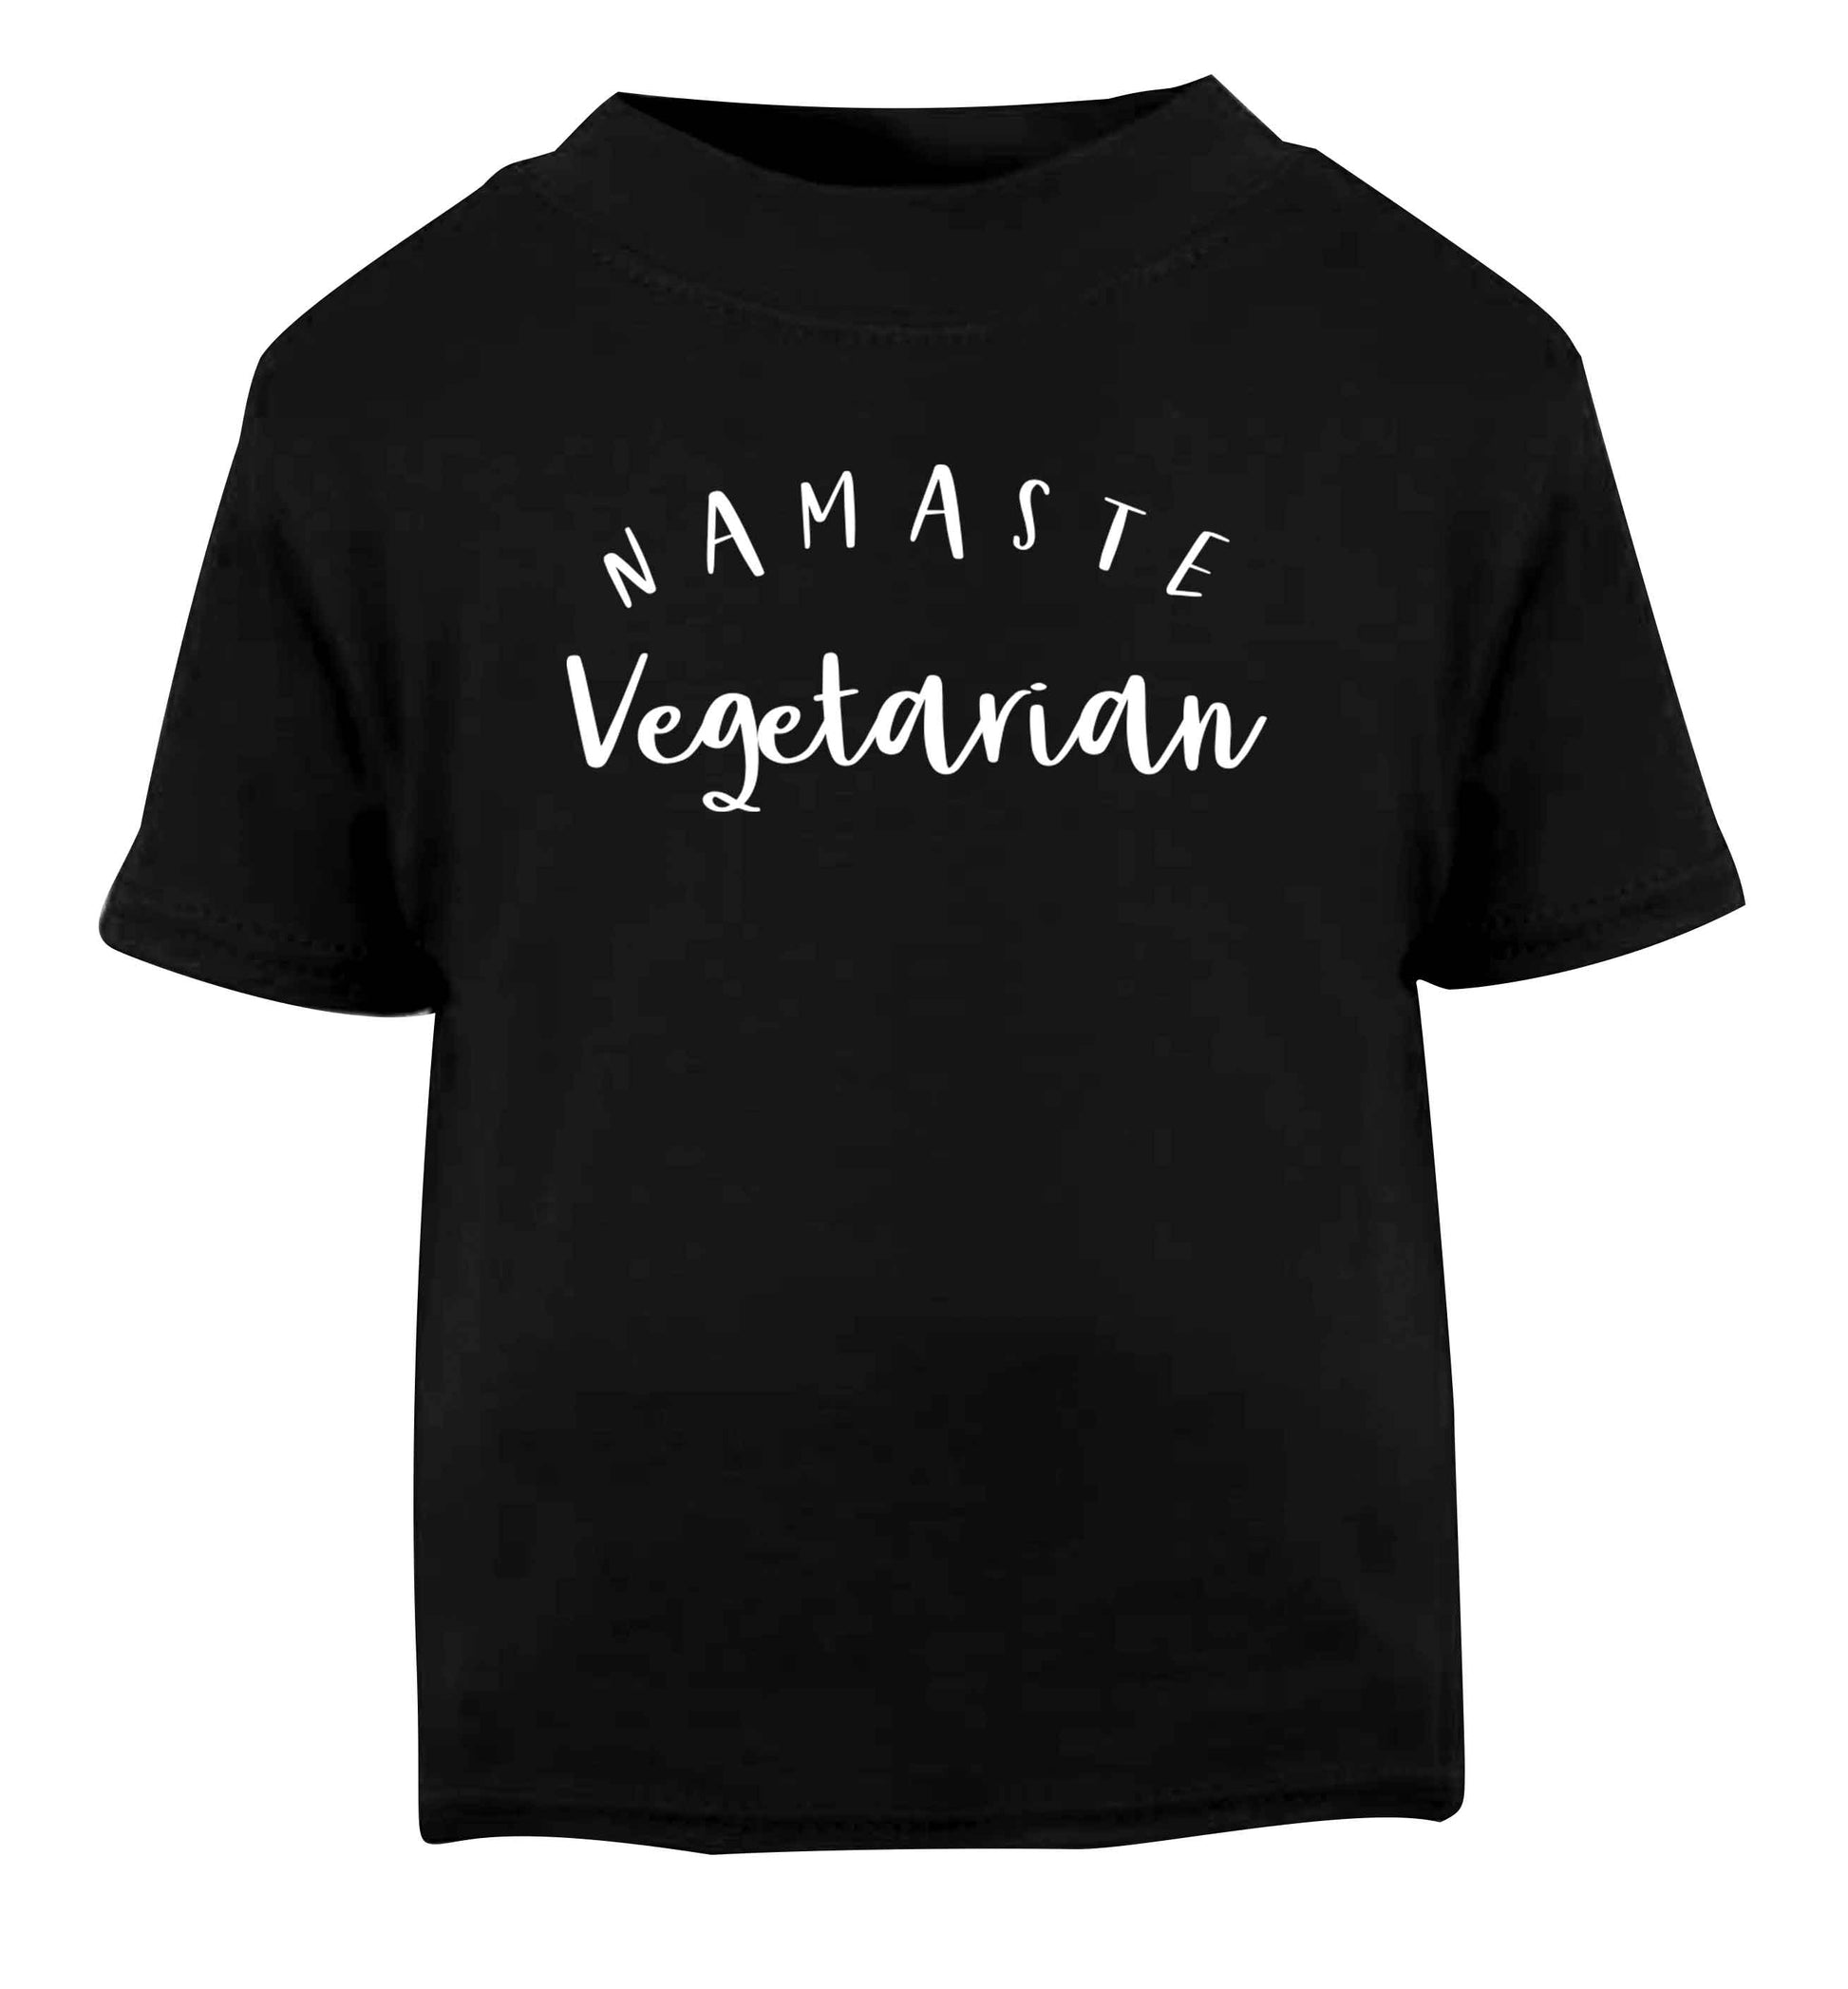 Namaste vegetarian Black Baby Toddler Tshirt 2 years